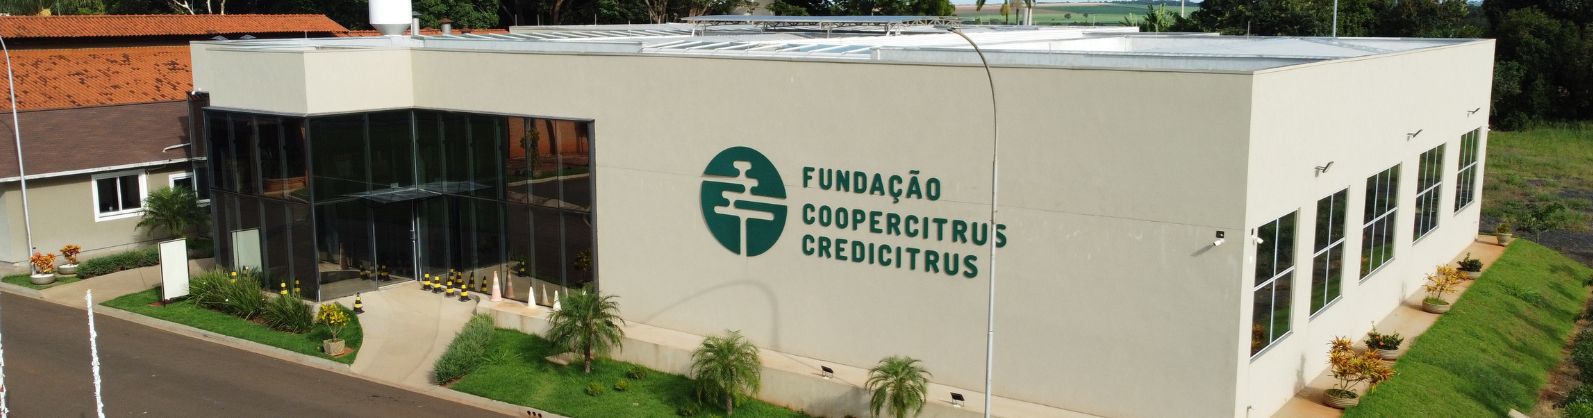 Fundação Coopercitrus Credicitrus abre inscrições para cursos voltados ao agronegócio